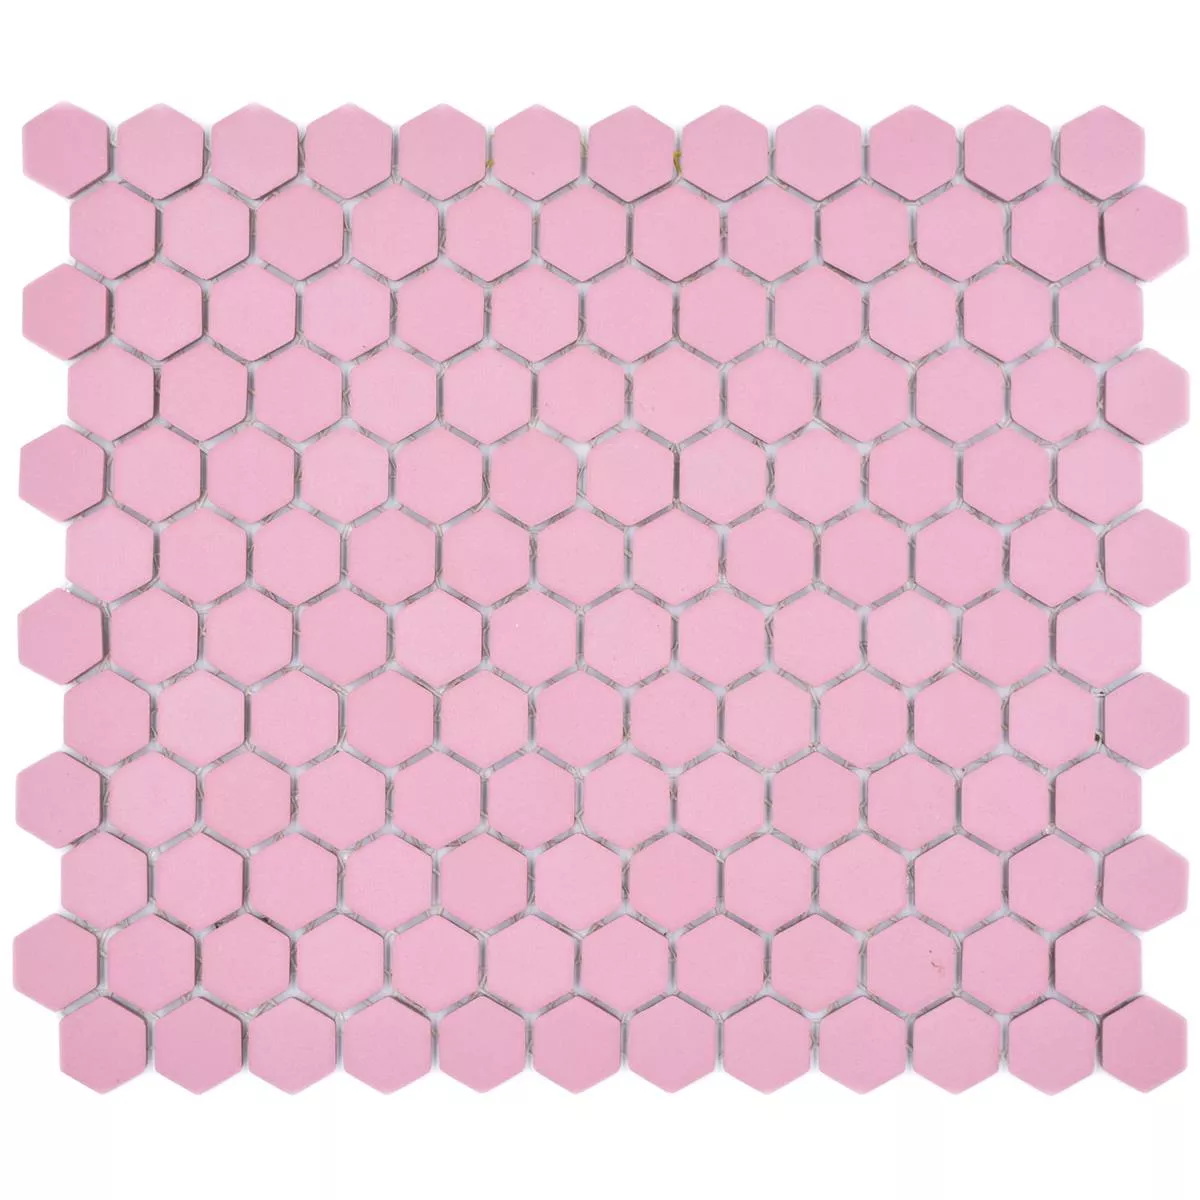 Sample Keramiek Mozaïek Bismarck R10B Hexagon Rosa H23